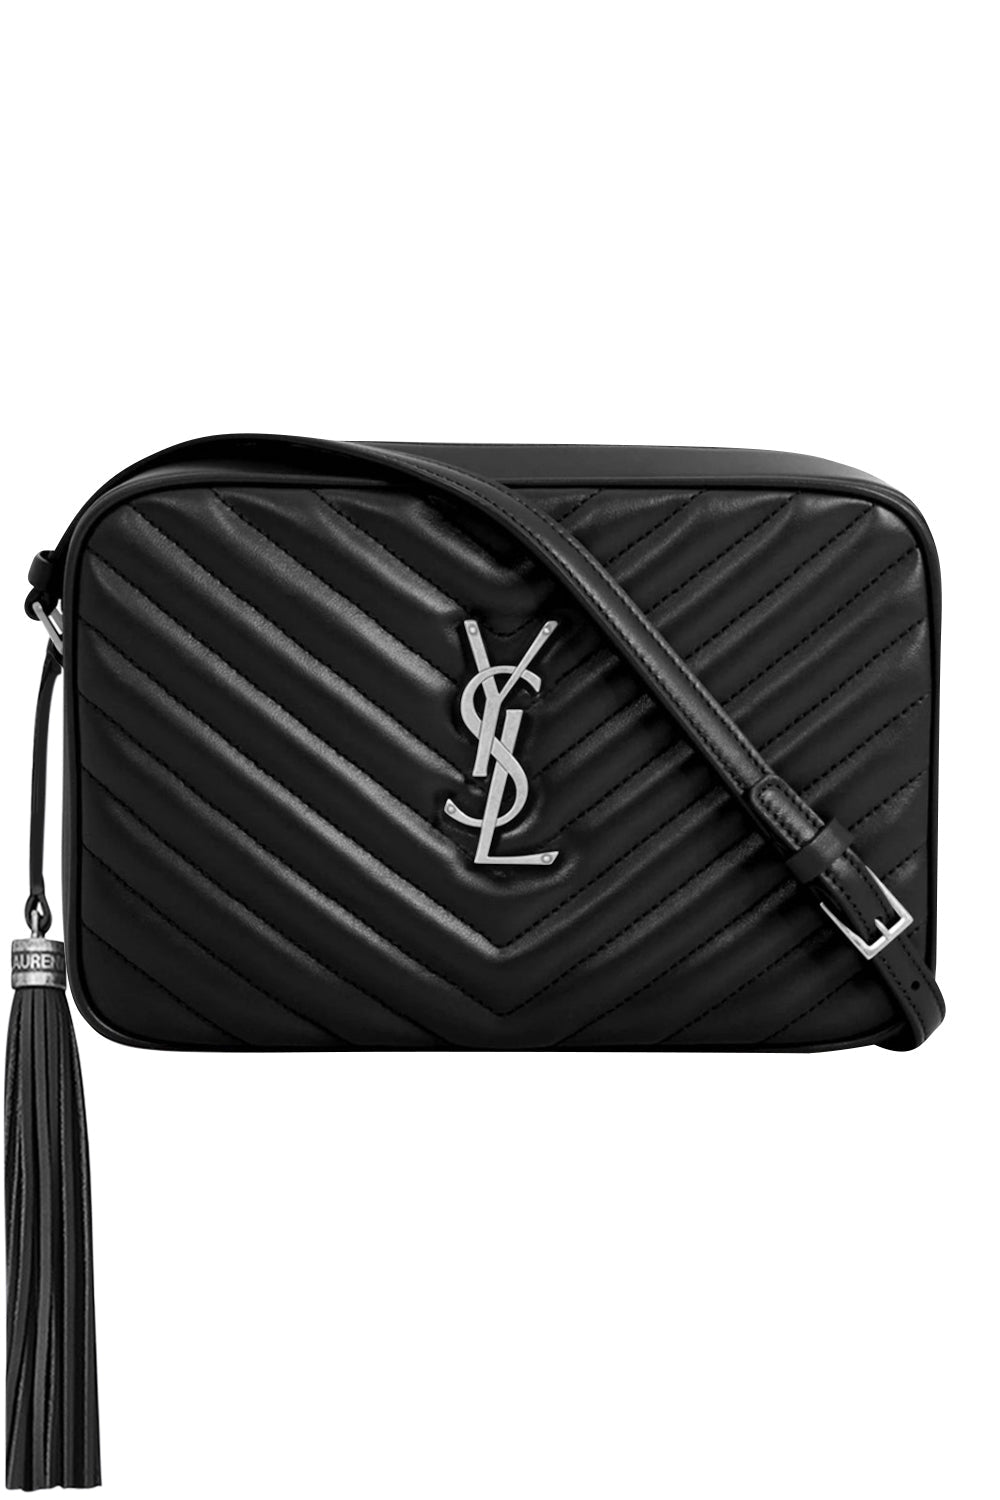 Saint Laurent Paris Black Suede Medium Sulpice Handbag - My Luxury Bargain  Australia